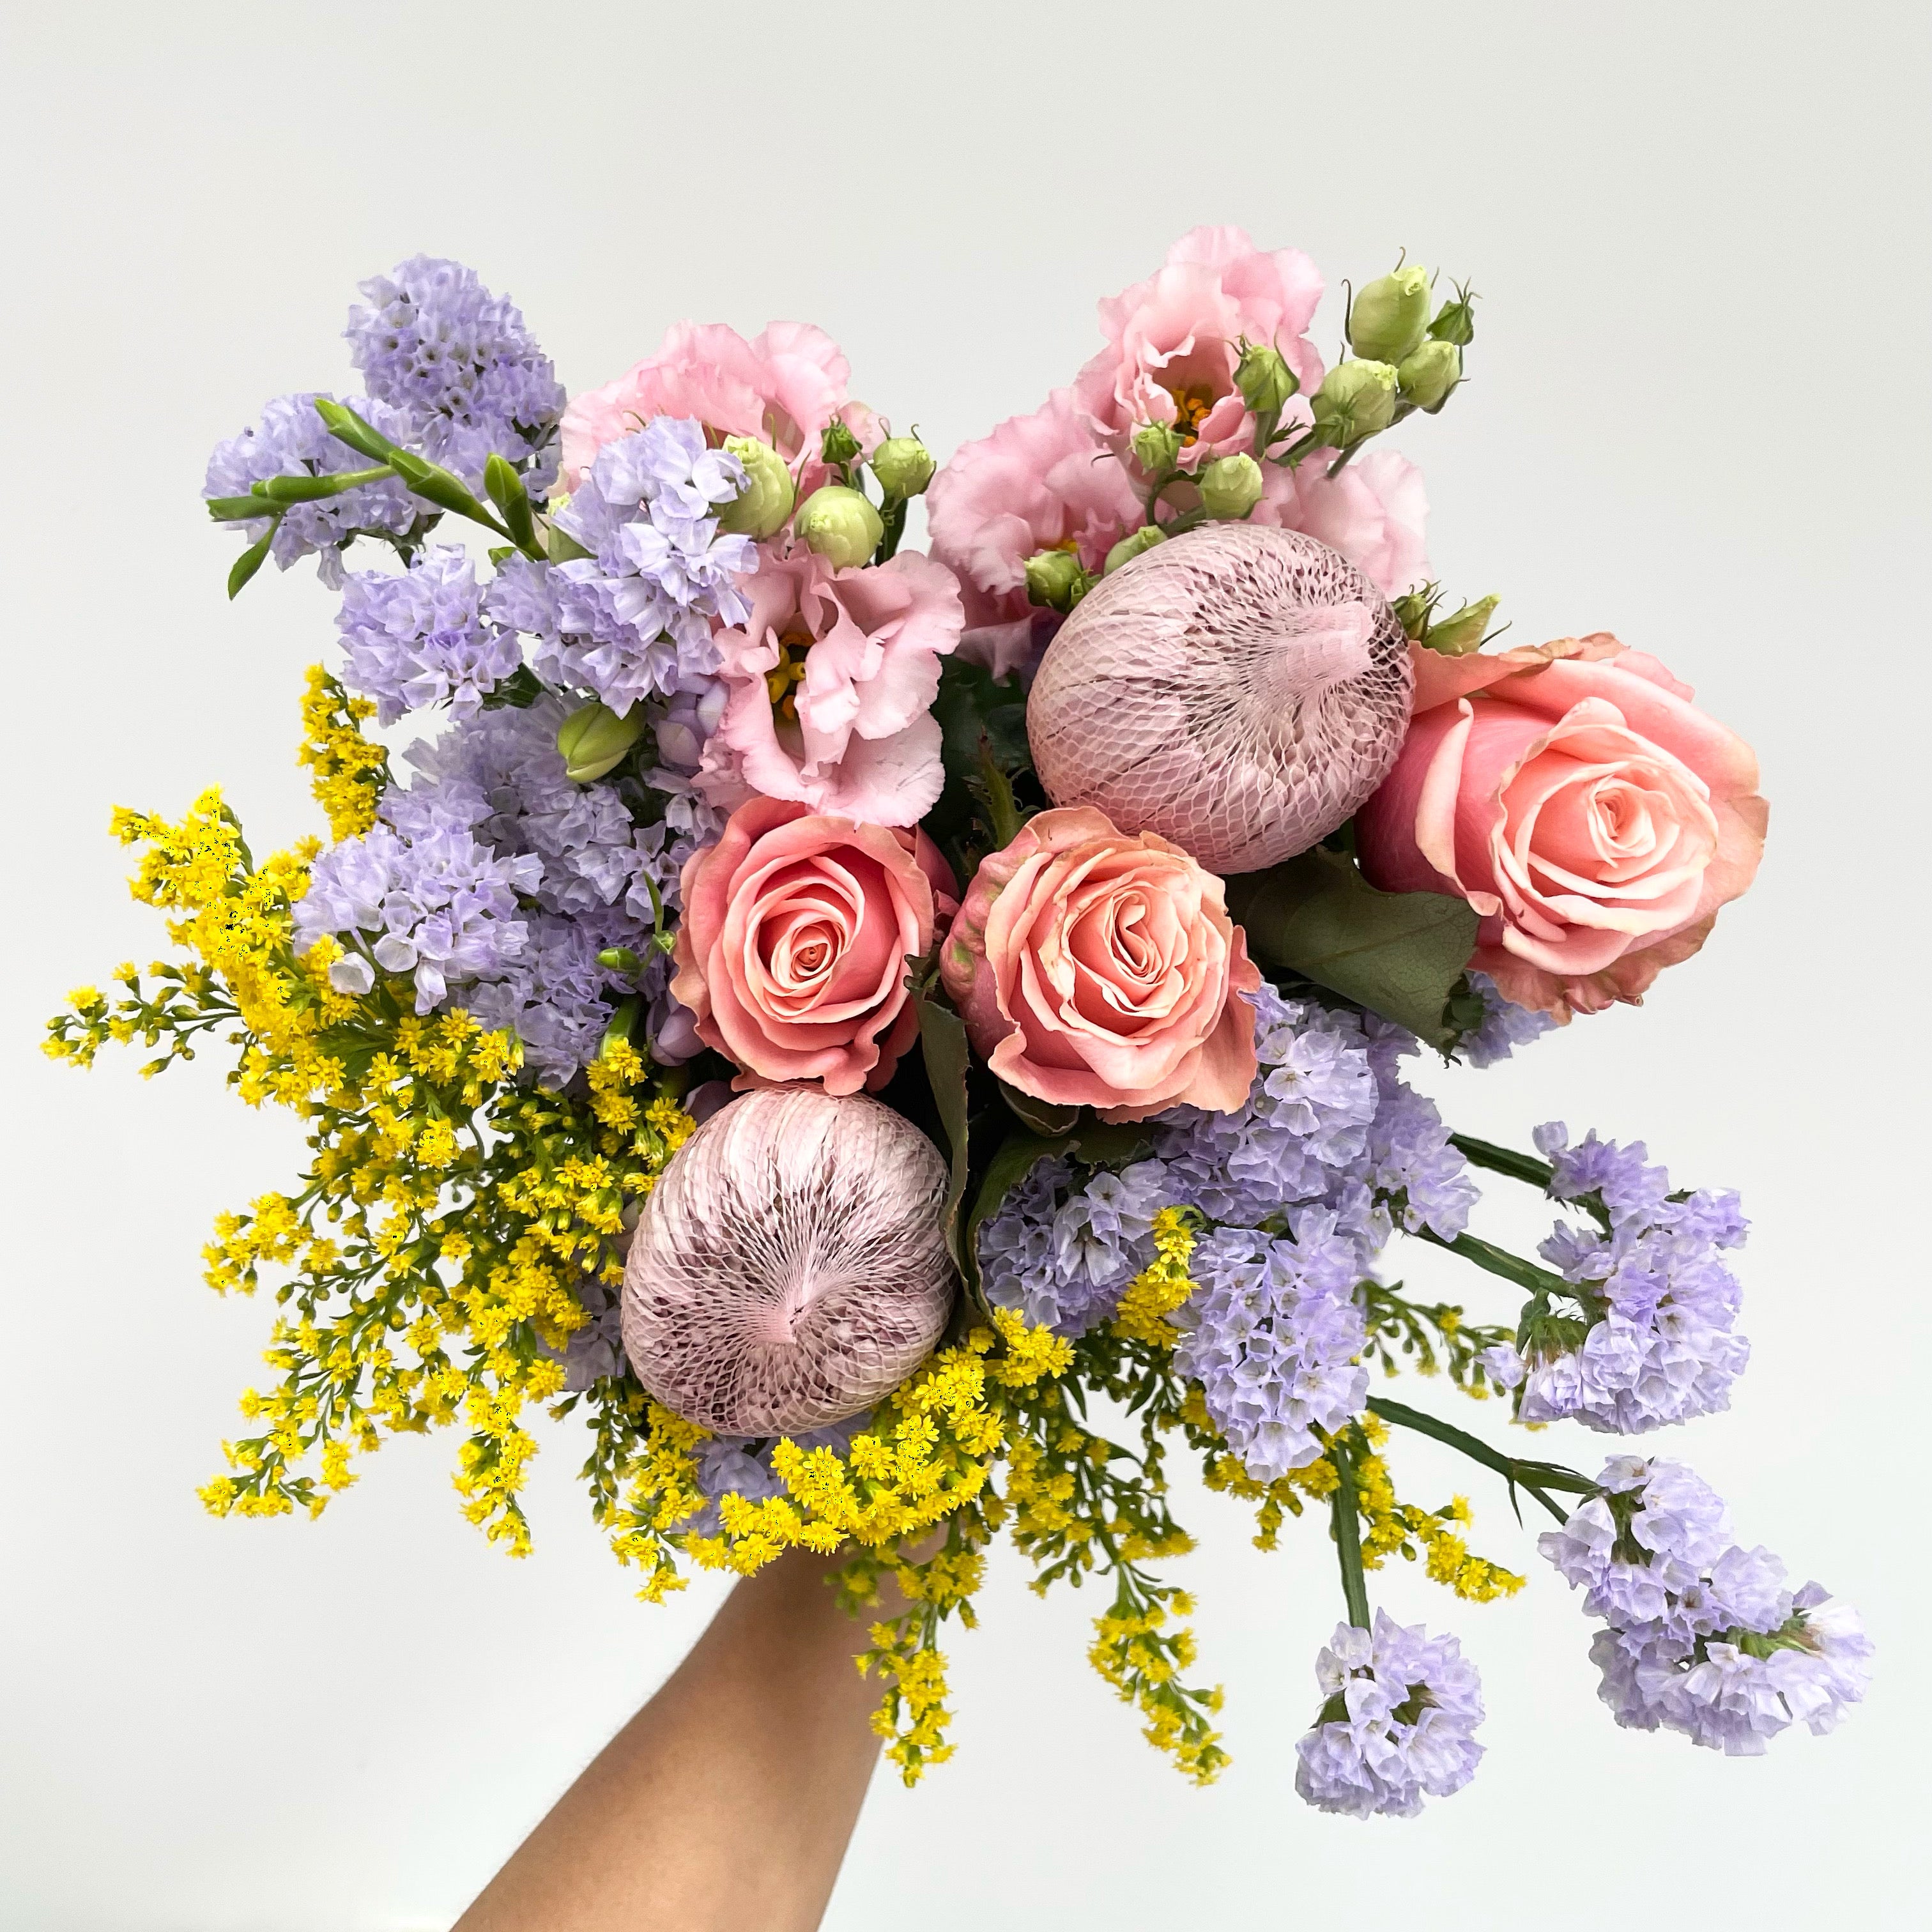 Seasonal Letterbox Flowers - FLOWERFIX